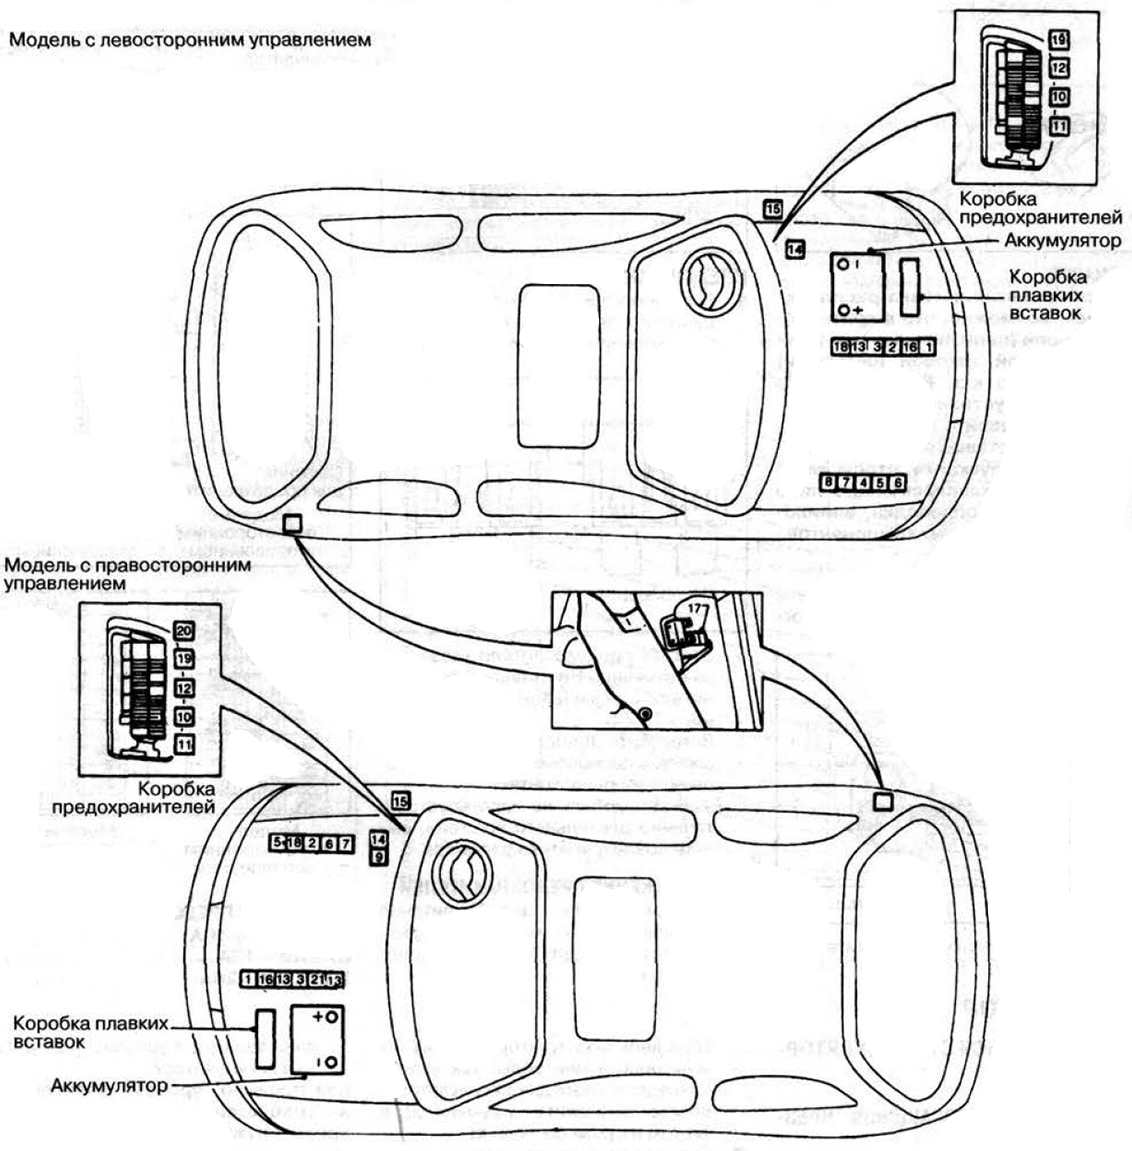 Nissan Micra K11 (1992-2002) - caixa de fusíveis